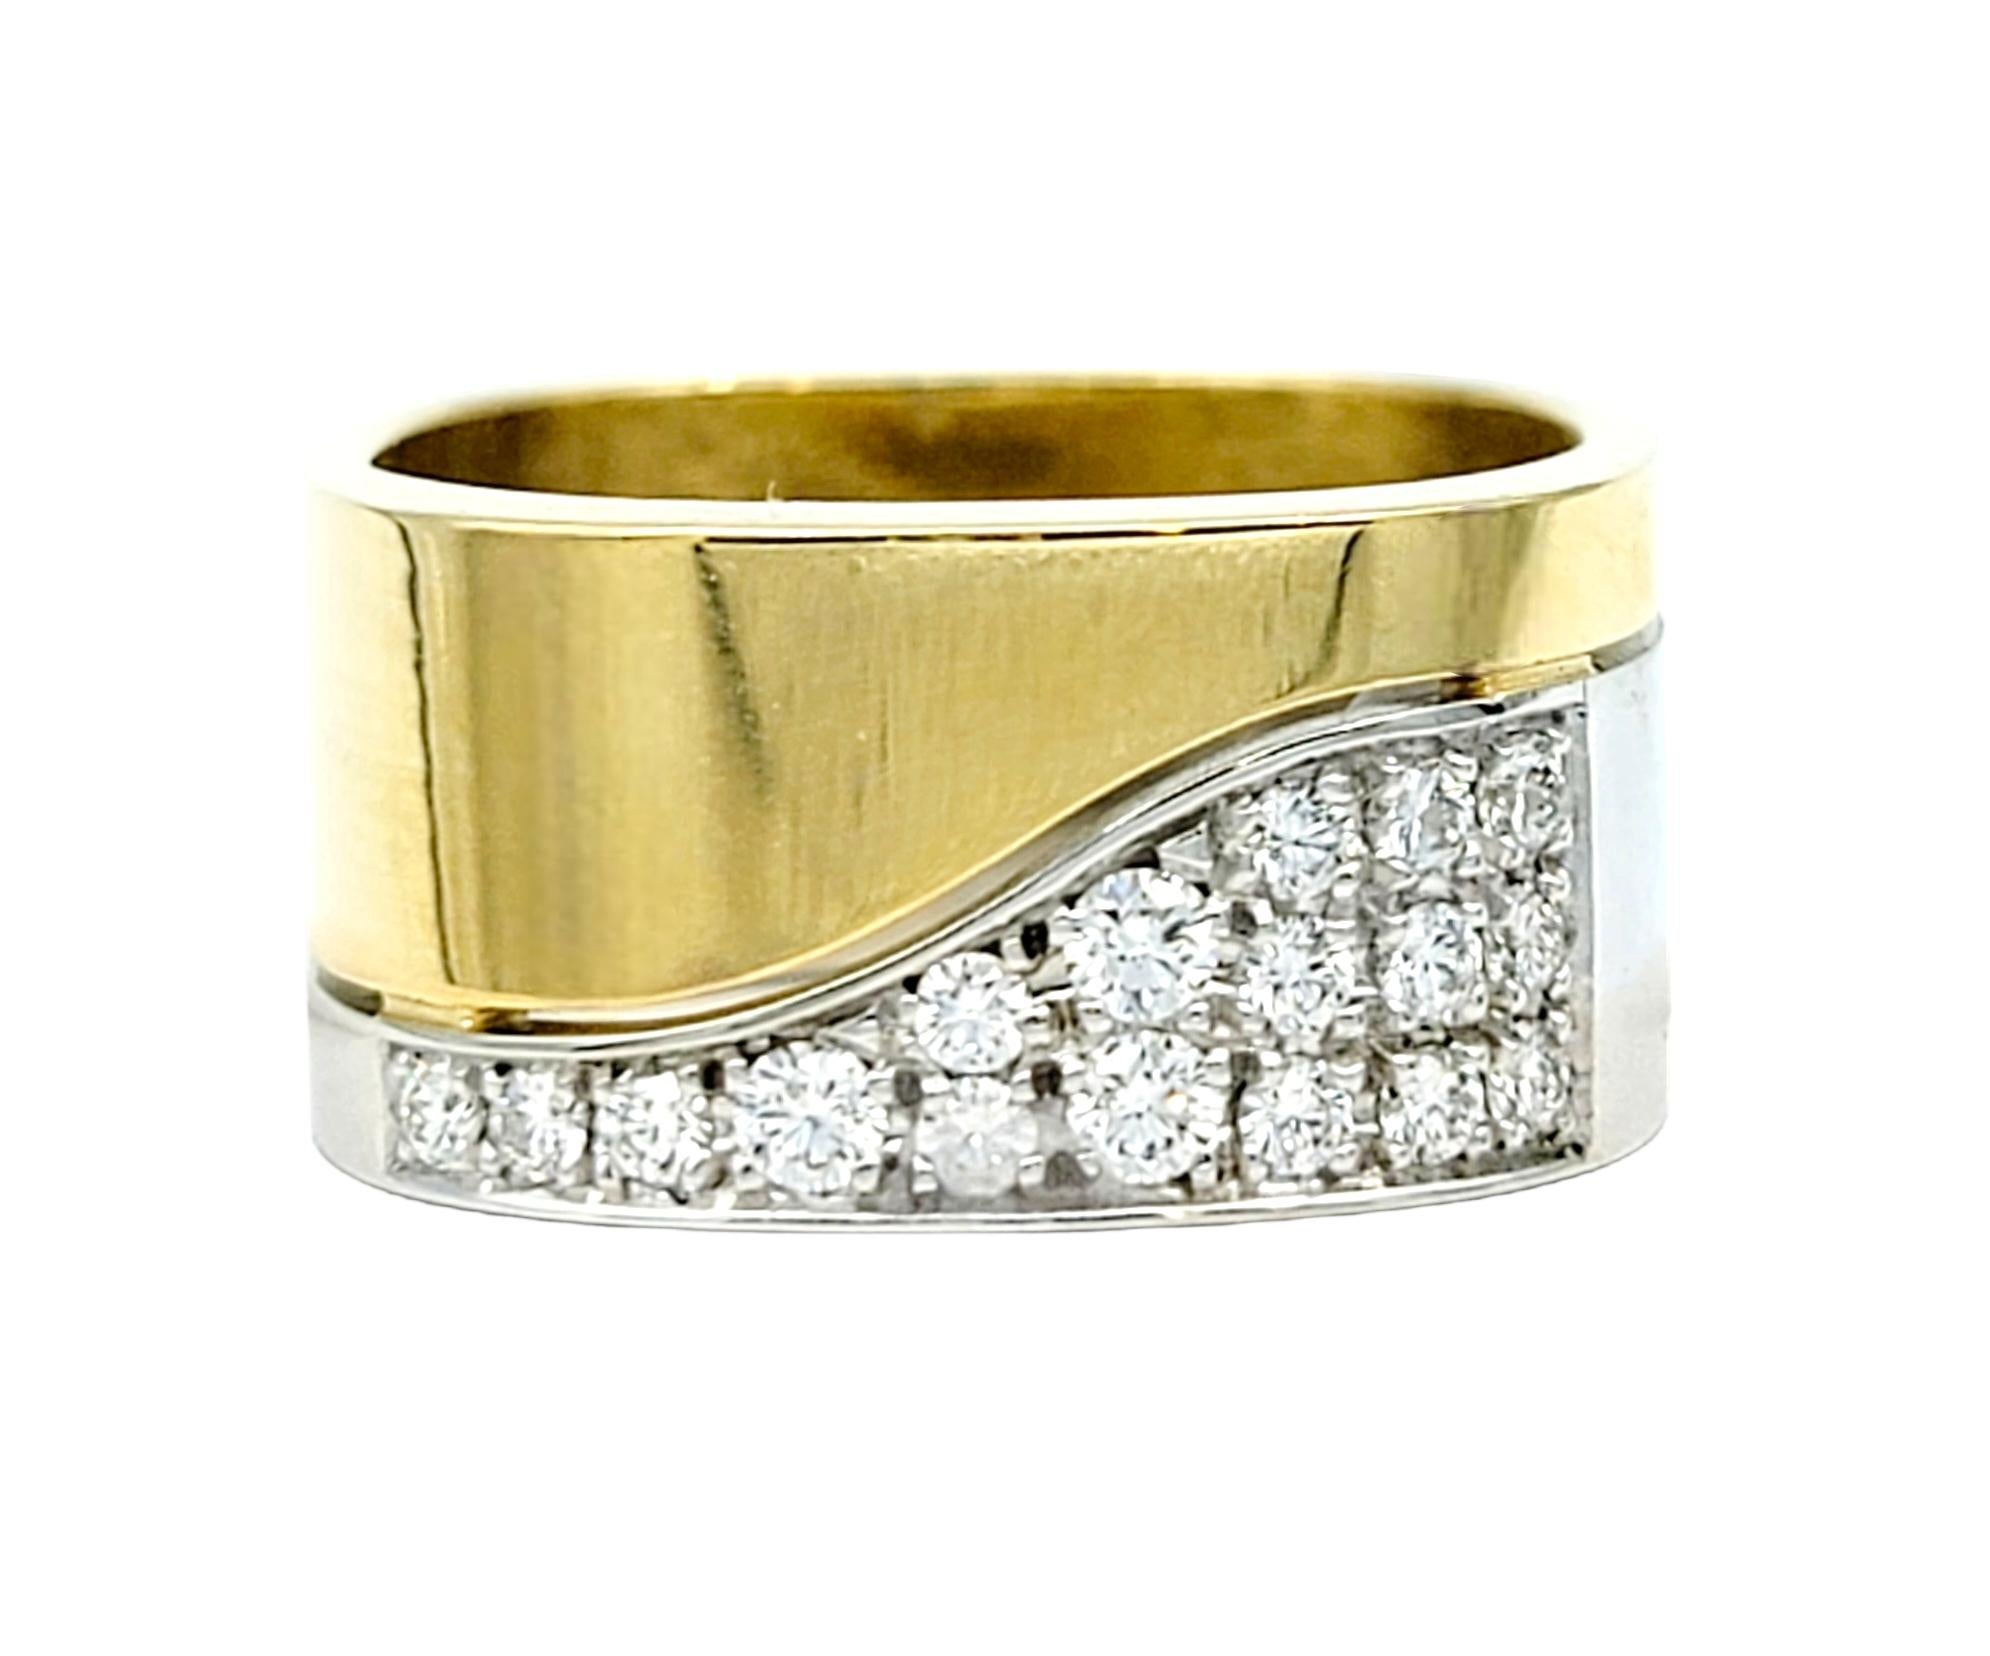 Taille de l'anneau : 5.75

Découvrez le summum du luxe et de l'innovation avec la bague à diamant 